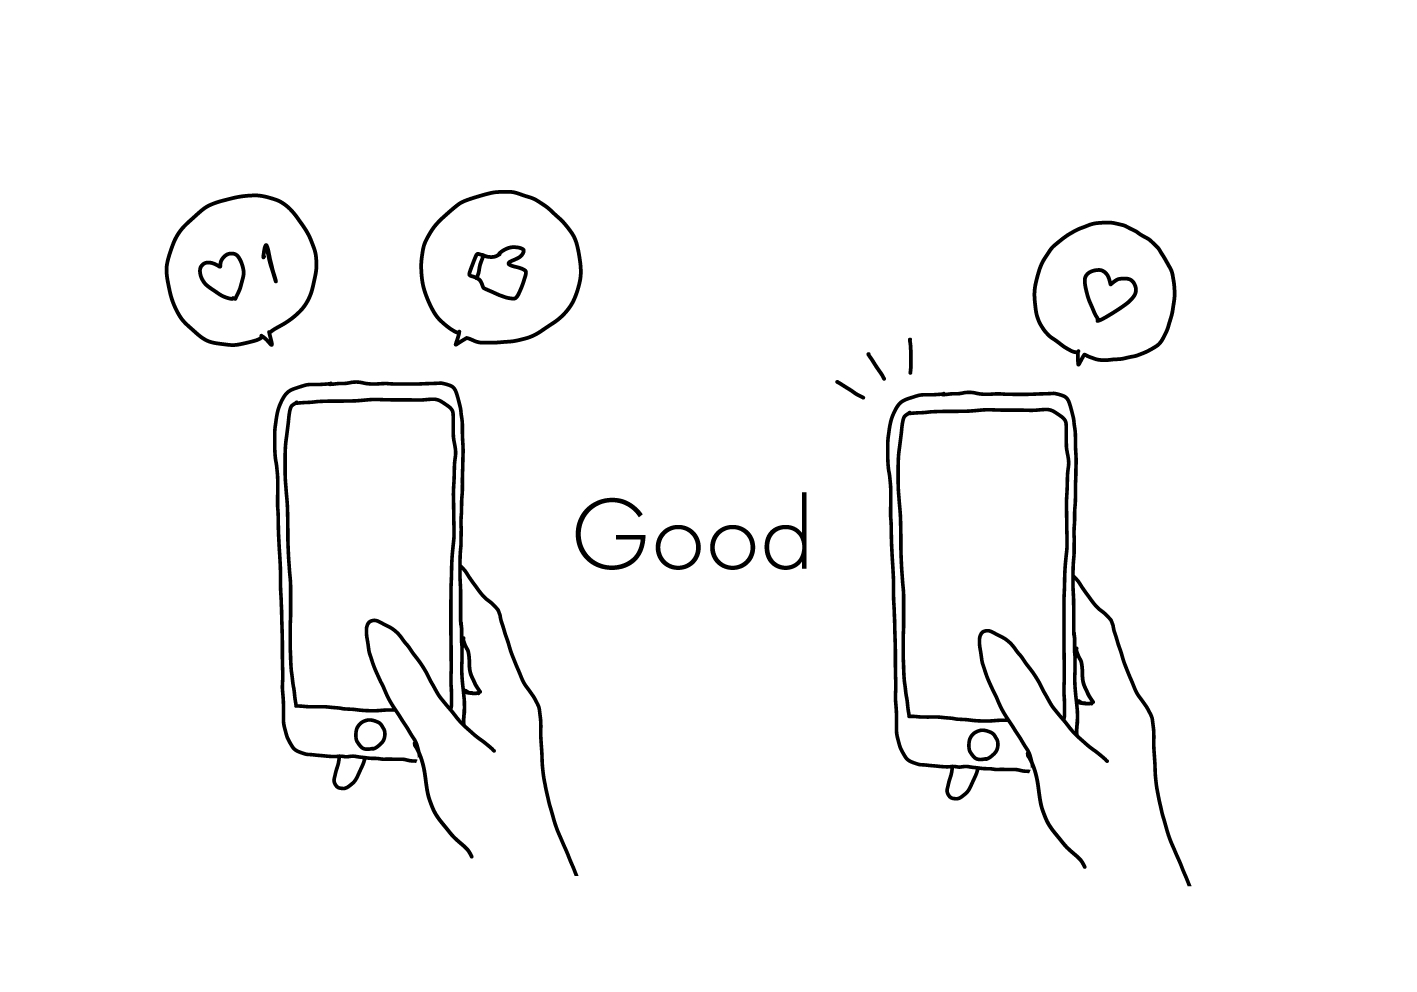 シンプルな線画でスマートフォンを持った右手が2組描かれている。それぞれのスマートフォンからは吹き出しでハートやグッドボタンが出ている。